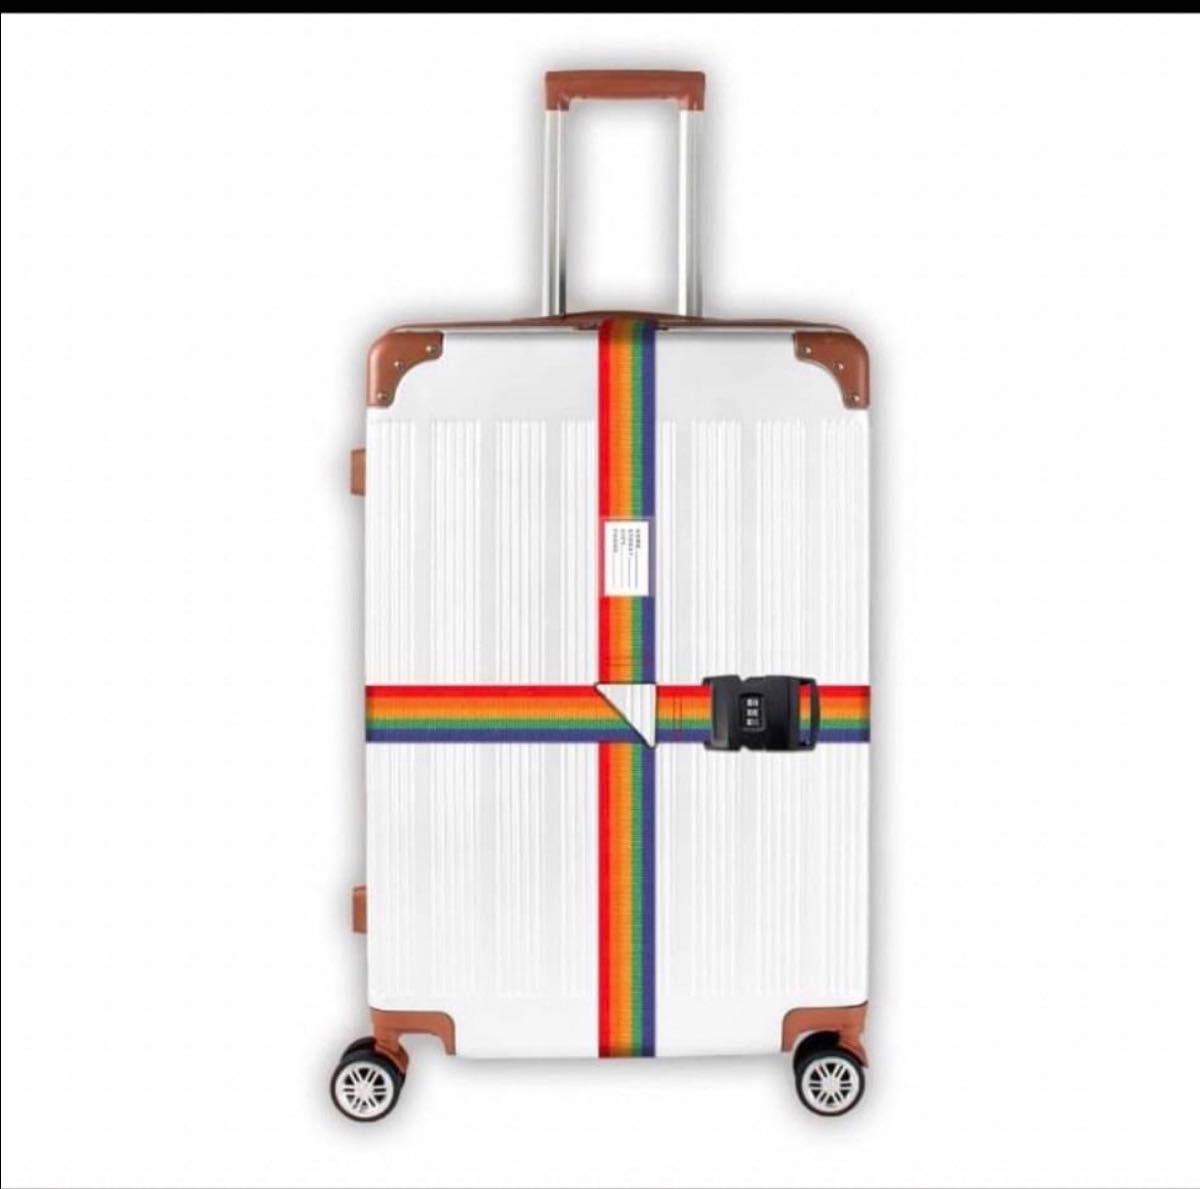 トランクベルト キャリーケースベルト 旅行 出張 盗難防止 荷崩れ防止 海外旅行 スーツケース キャリーケース TSAロック